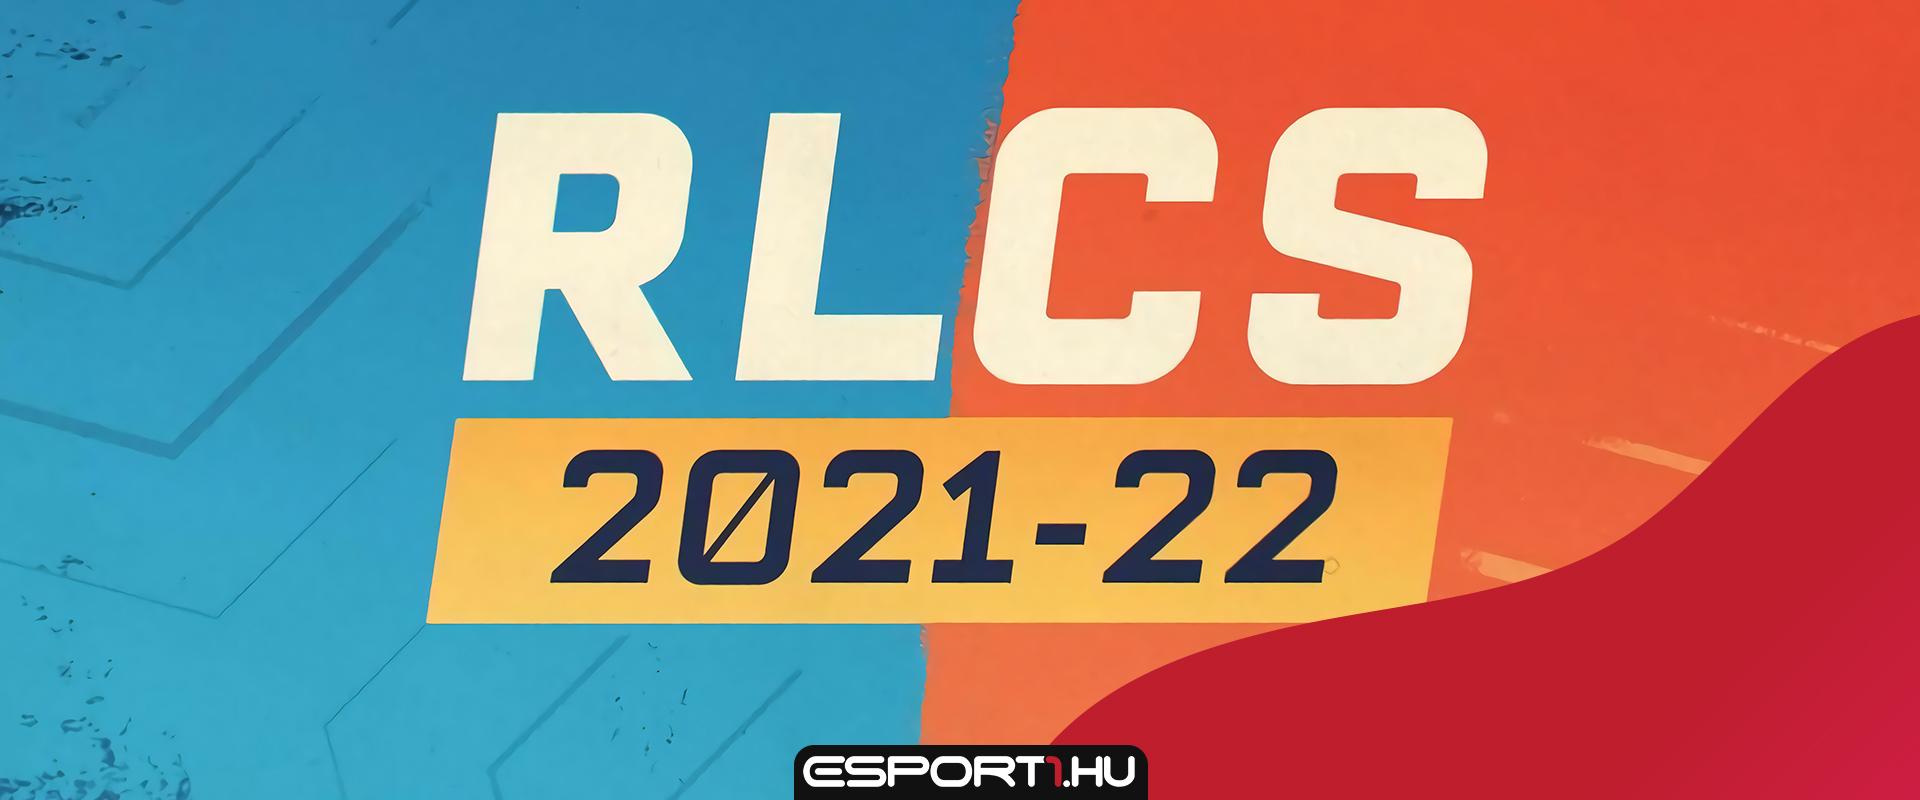 Bejelentették a Rocket League Championship Series 2021-22-es szezonját